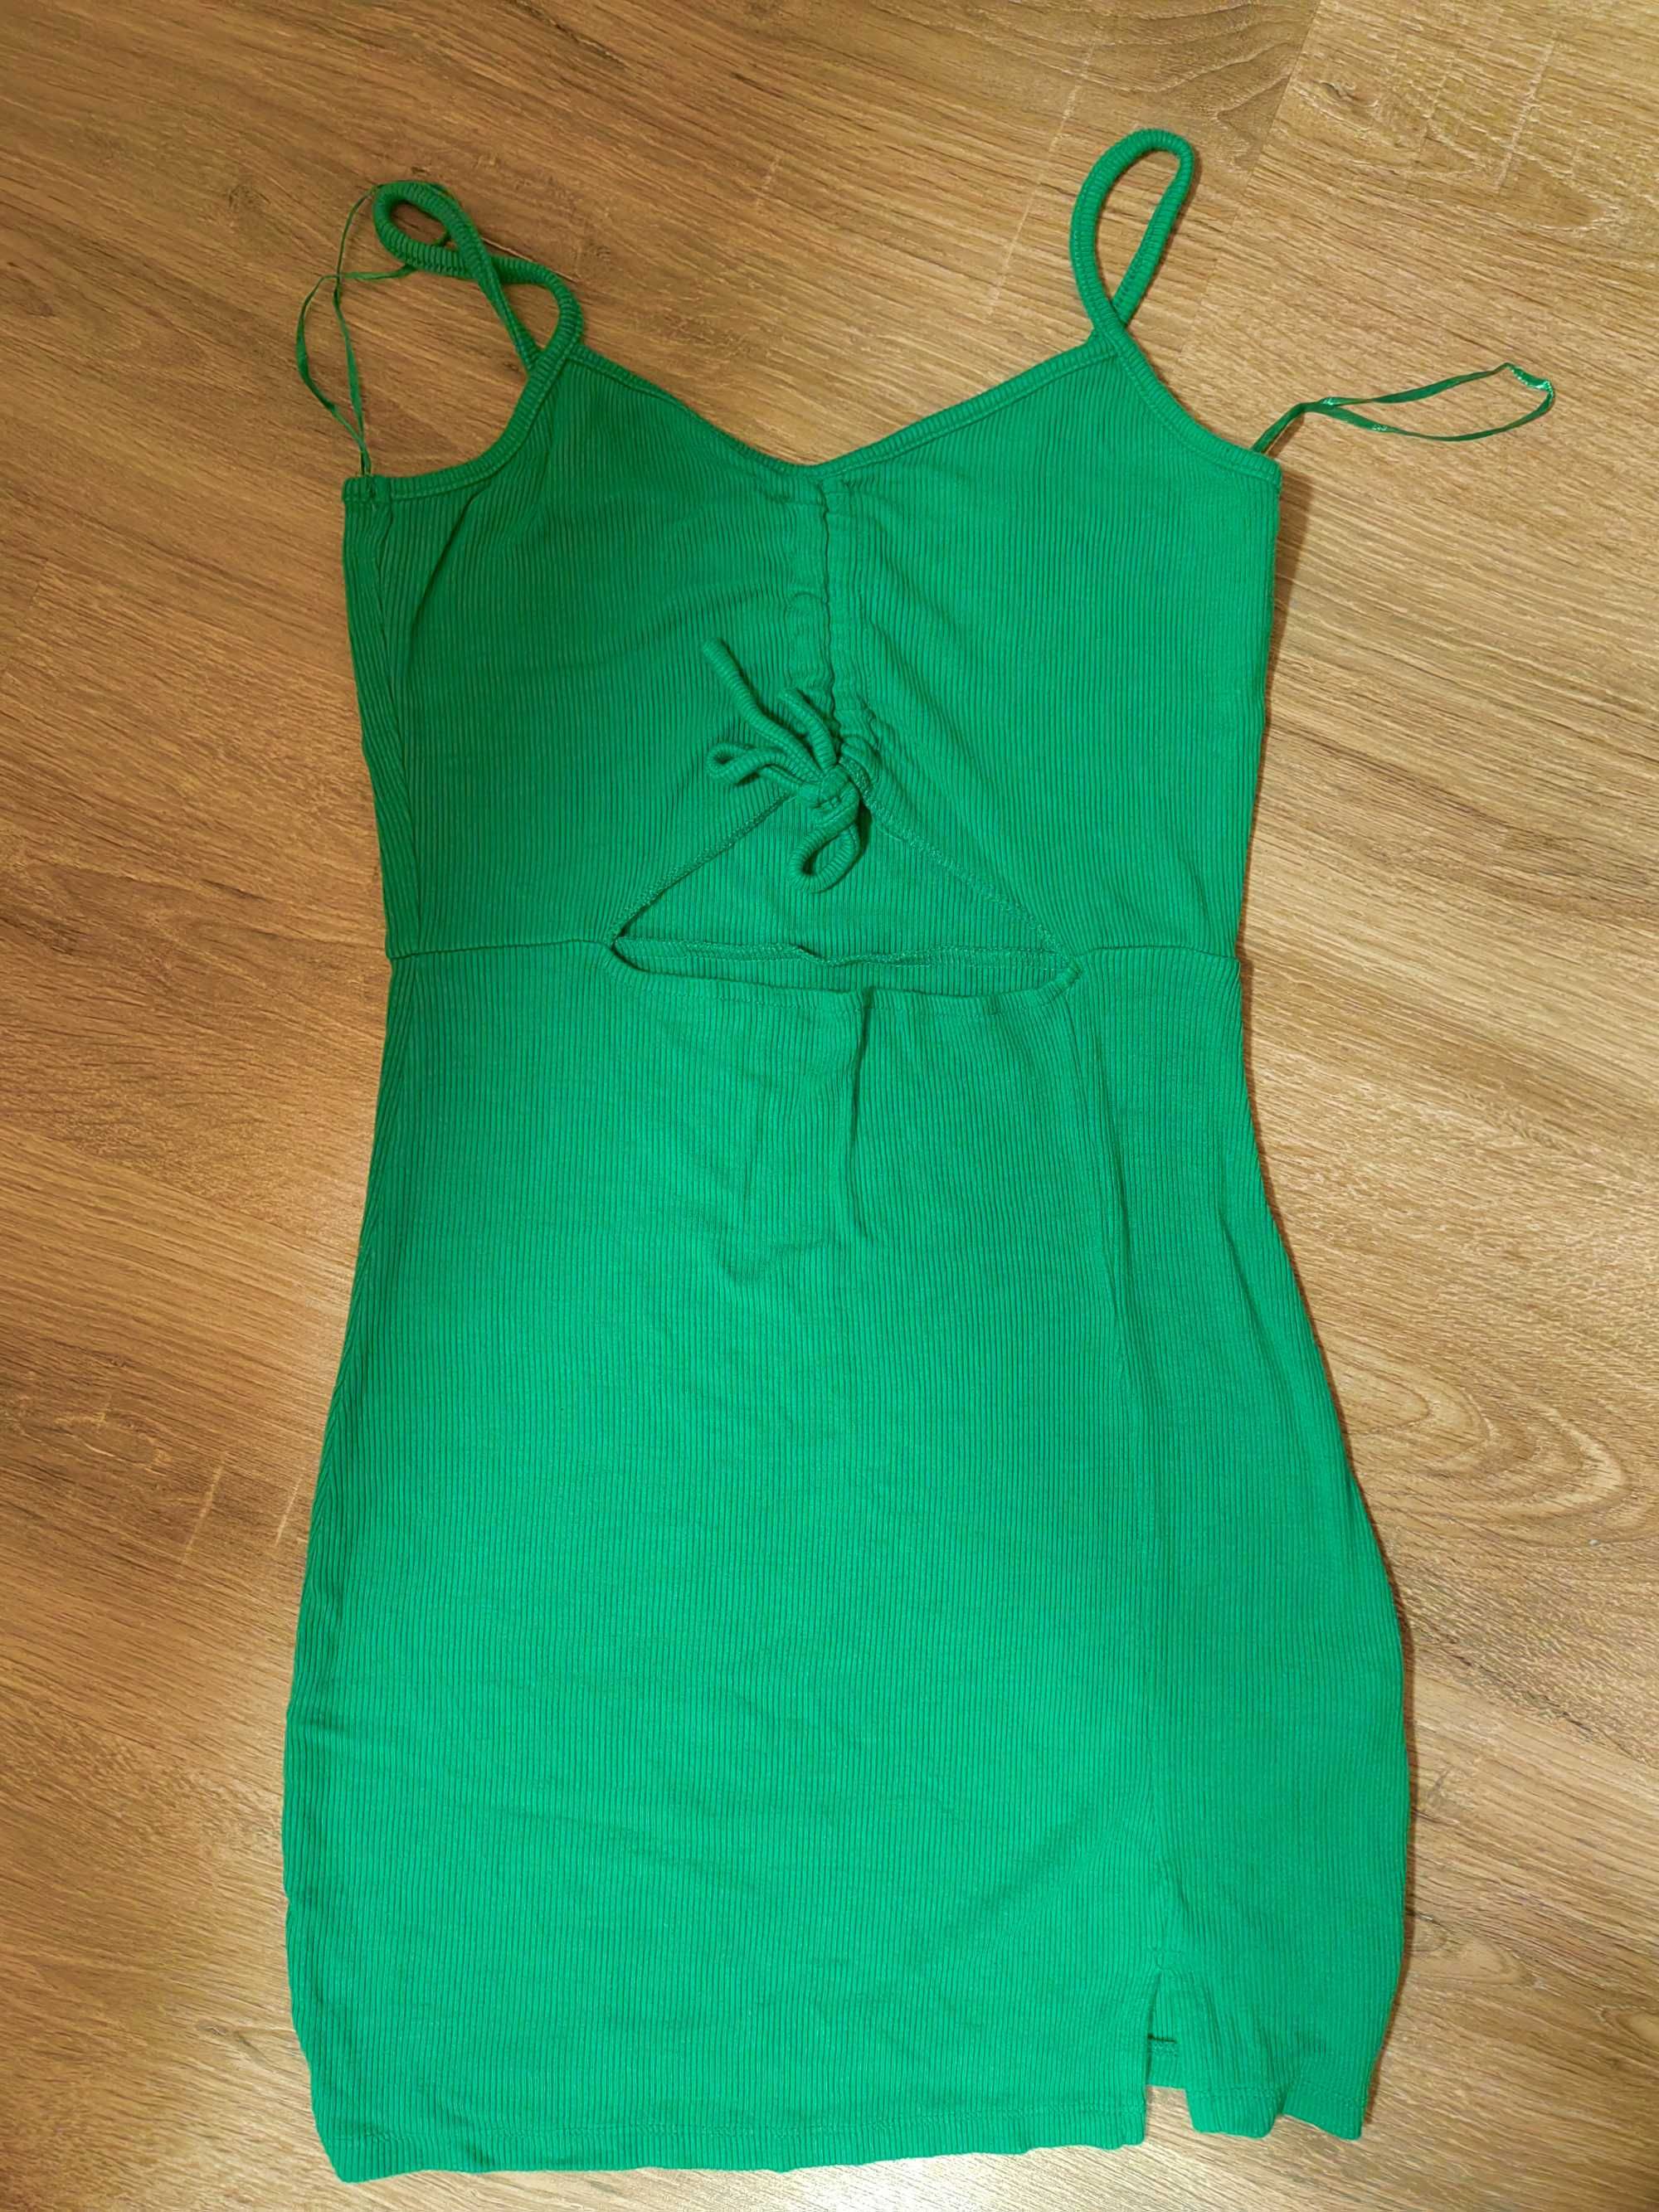 Дамска Зелена рокля по тялото